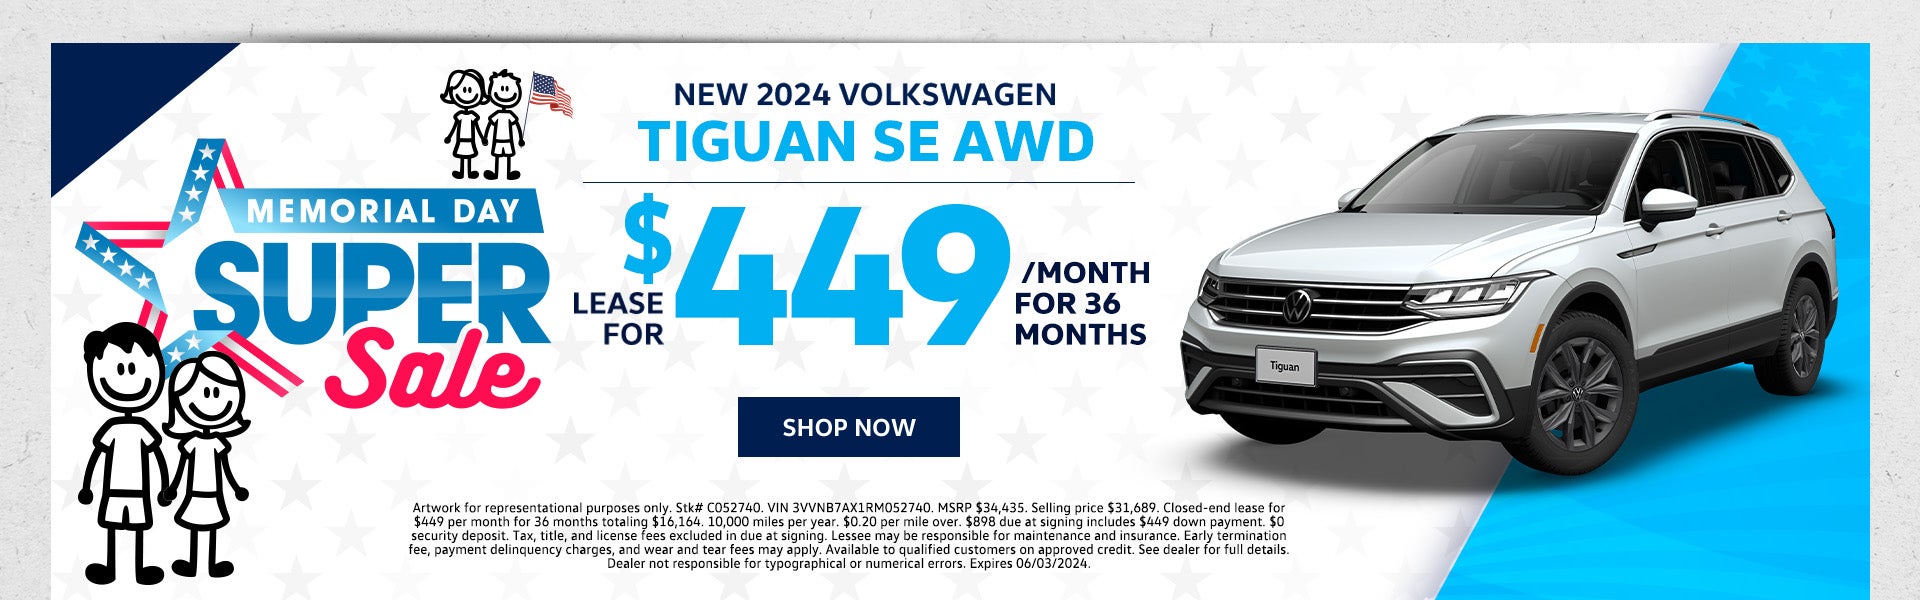 New 2024 VW Tiguan SE AWD